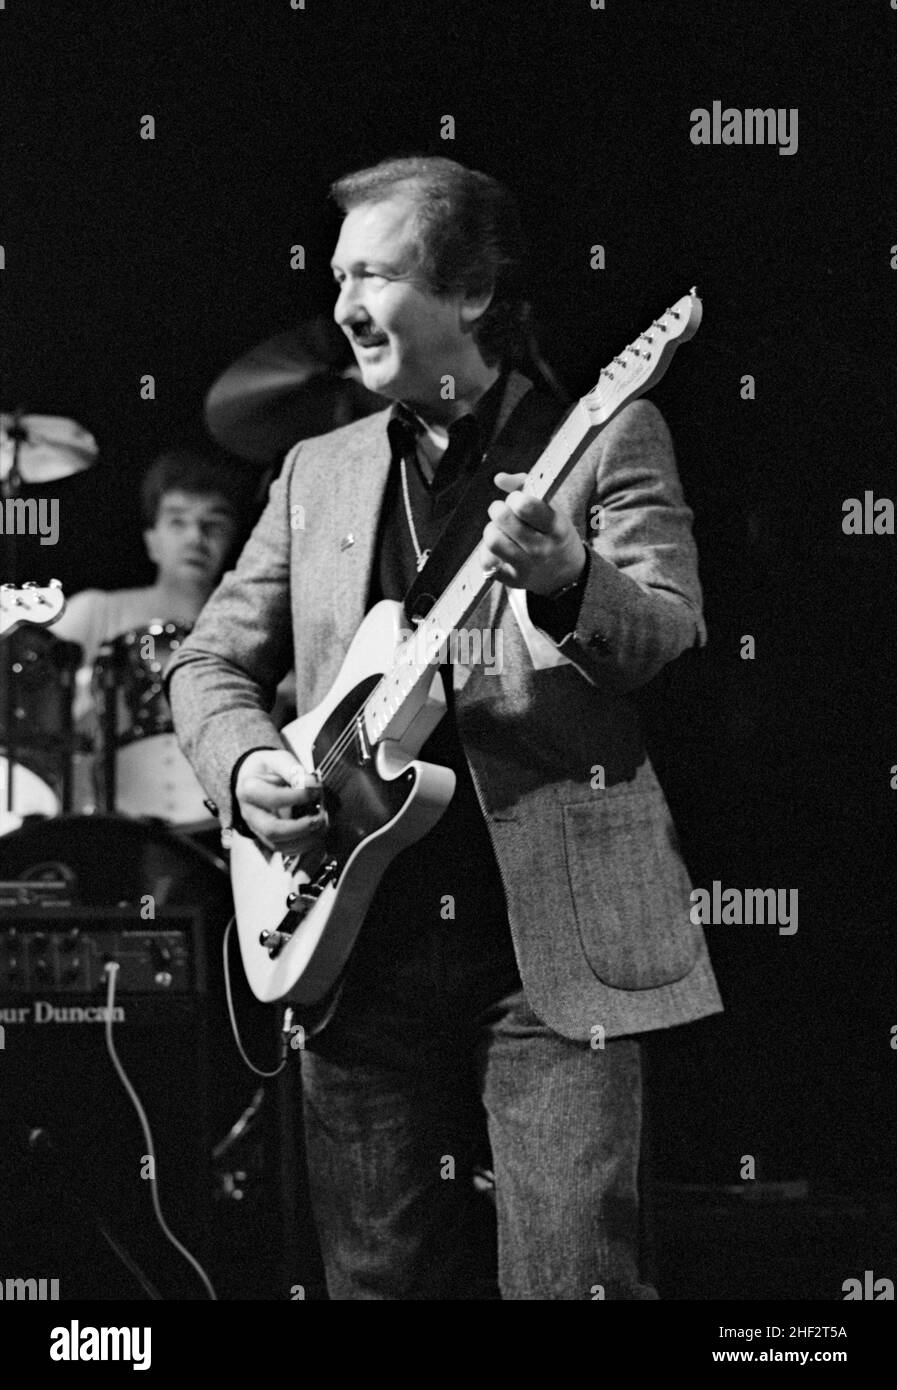 Der amerikanische Gitarrist James Burton trat 1987 bei einer Wohltätigkeitsjam im Town & Country Club, London, England auf. Stockfoto